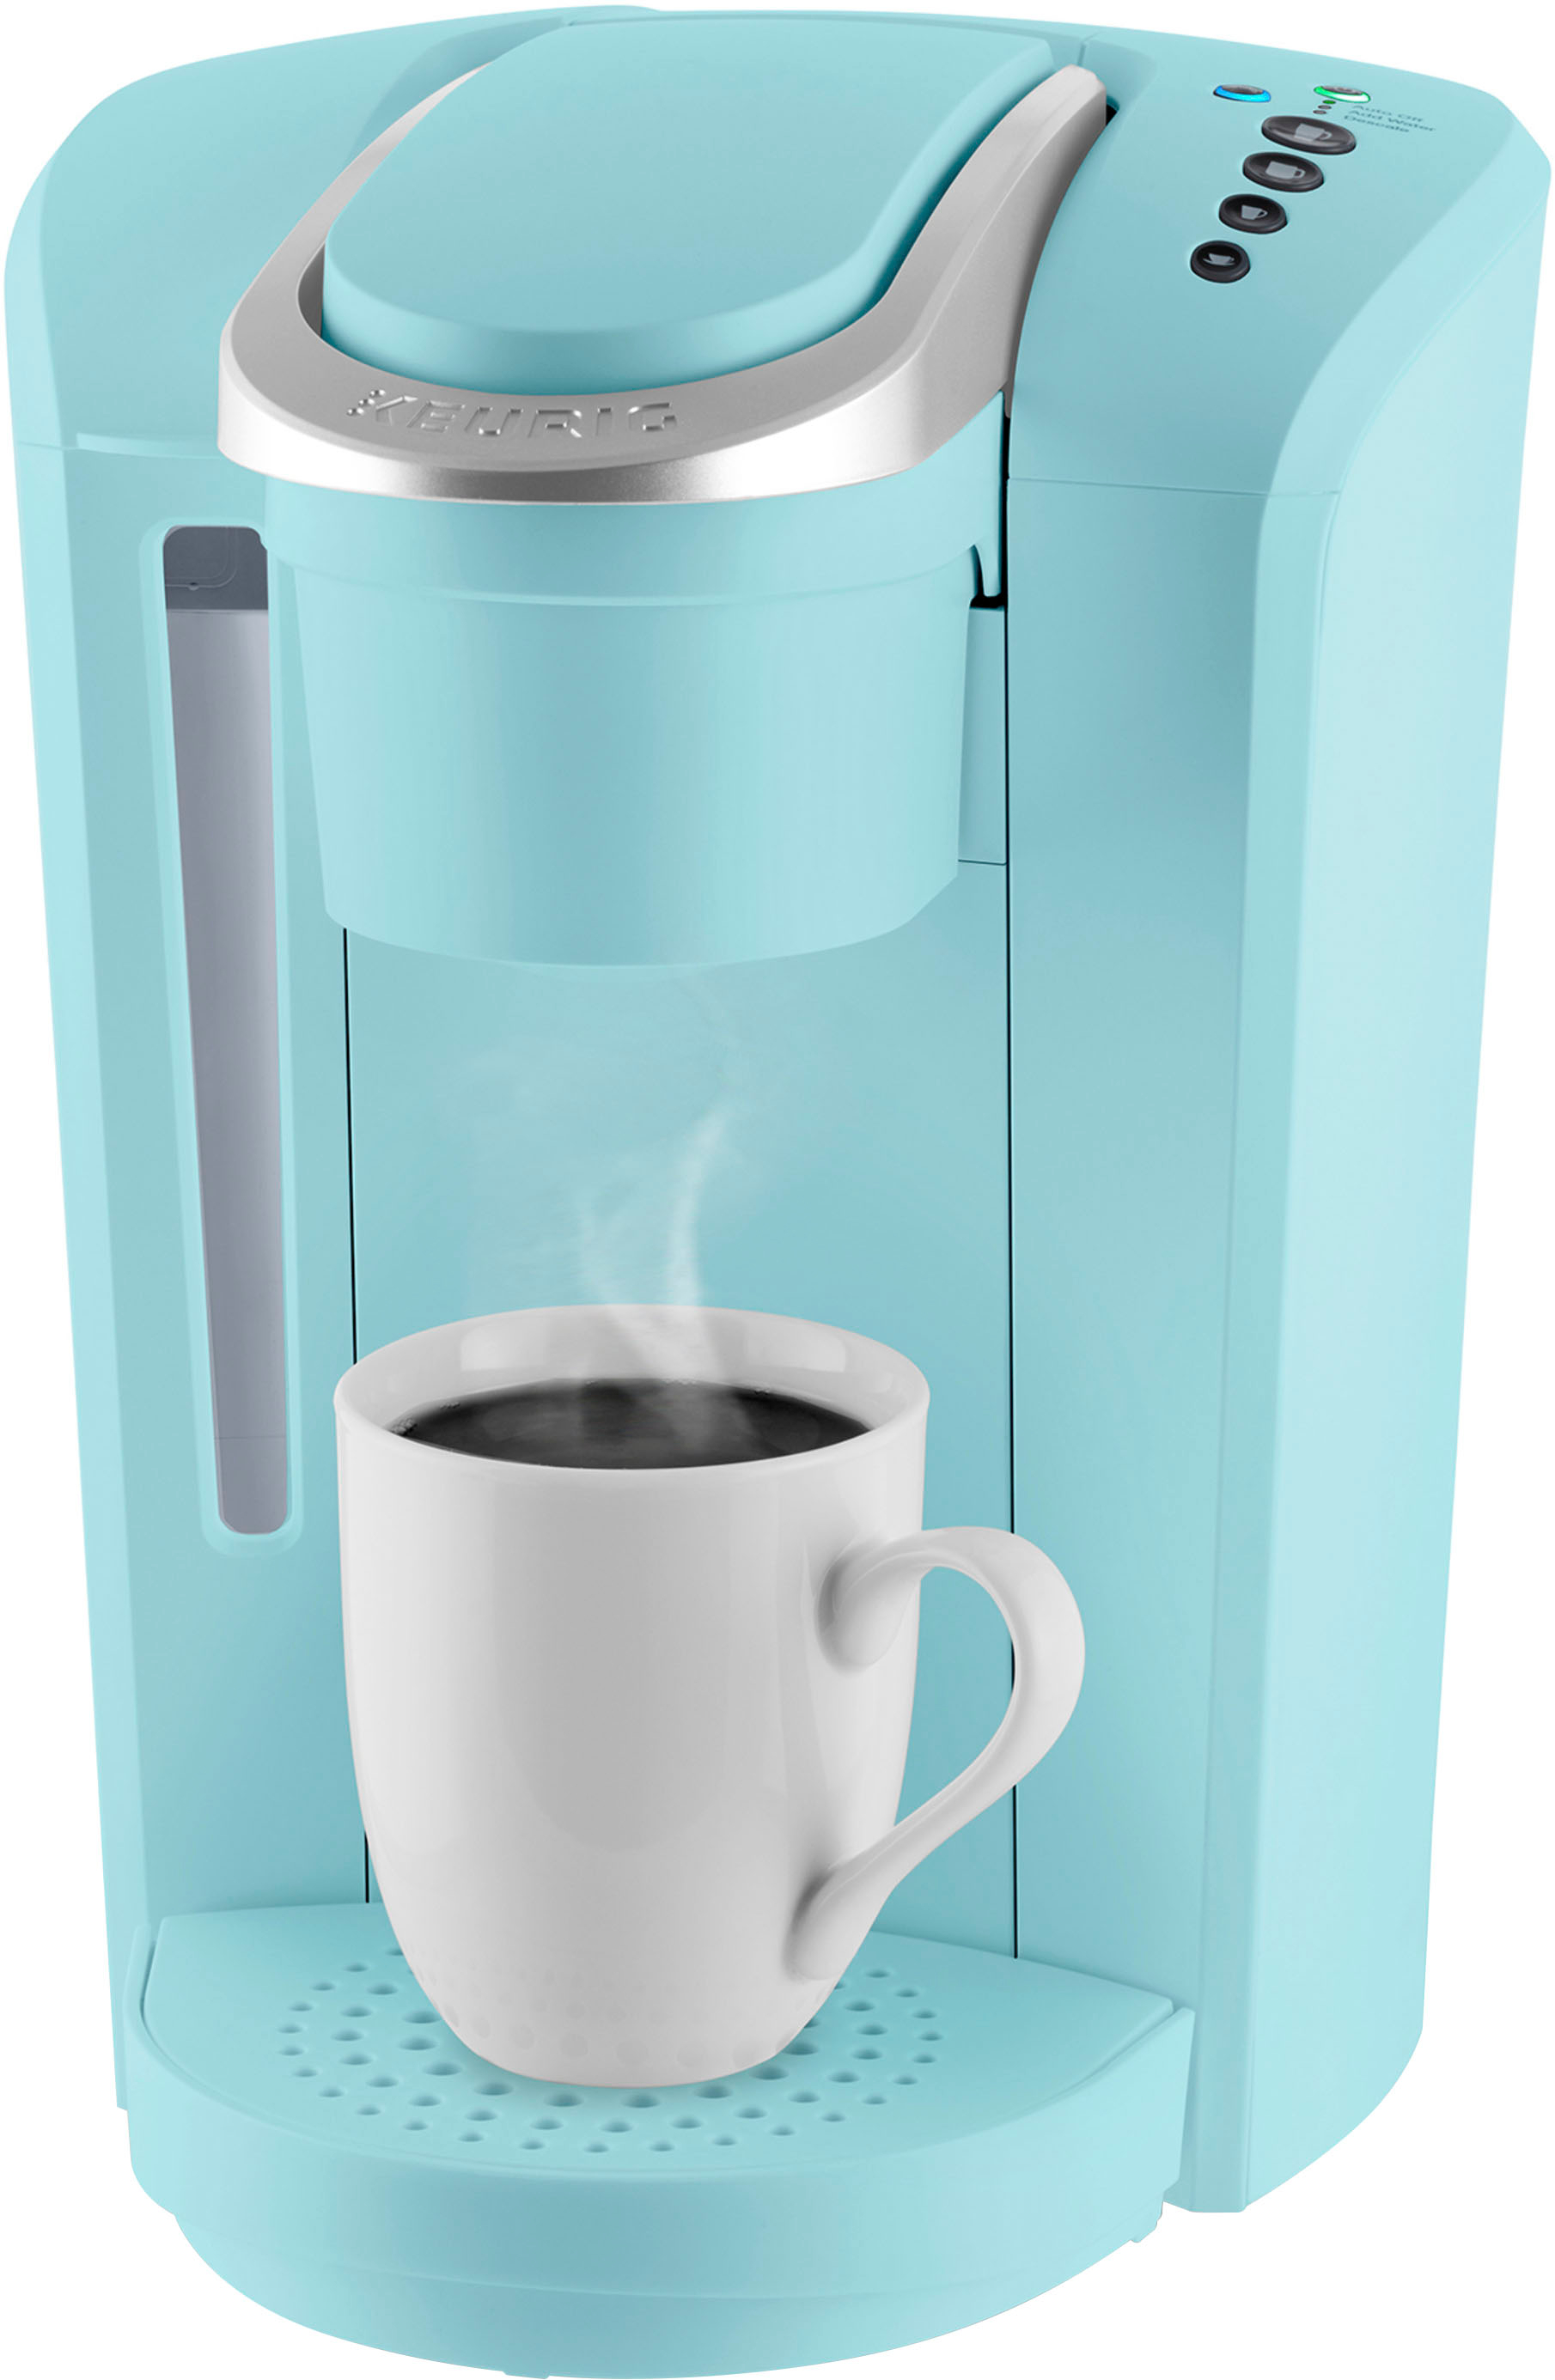 Angle View: Keurig - K-Select Single-Serve K-Cup Pod Coffee Maker - Oasis